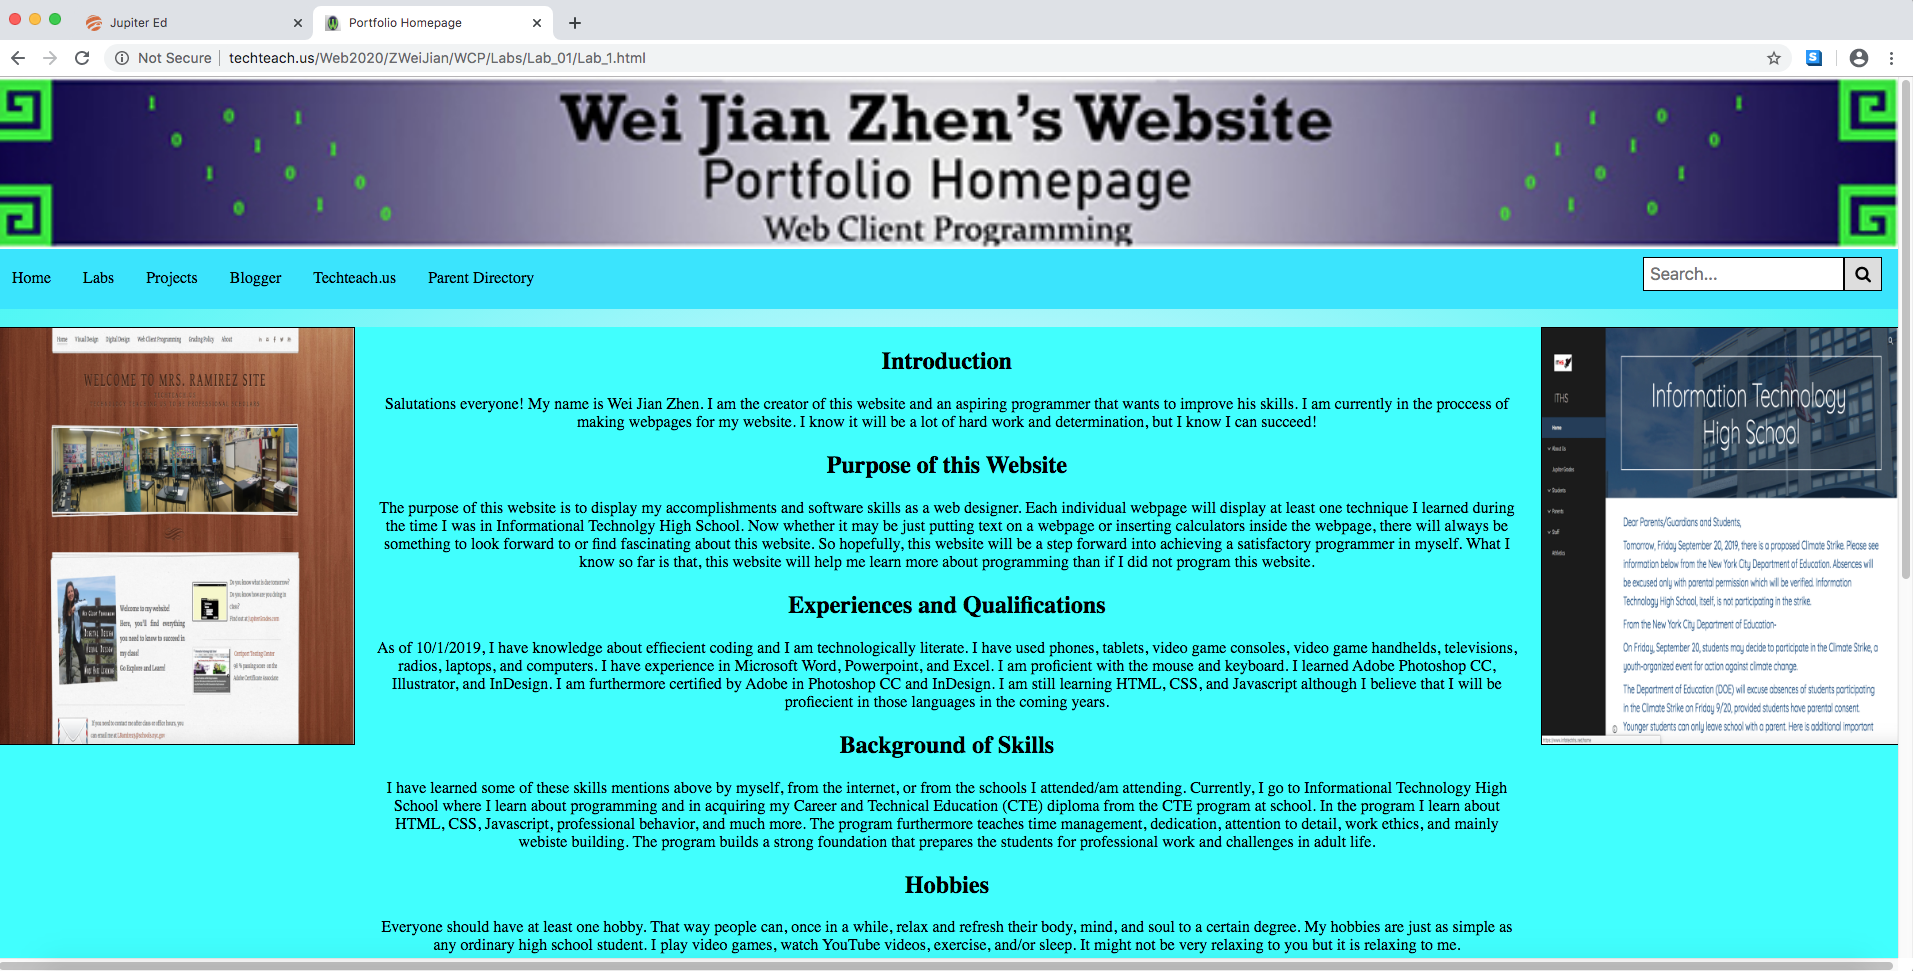 An image of Wei Jian Zhen's Web Client Programming portfolio homepage